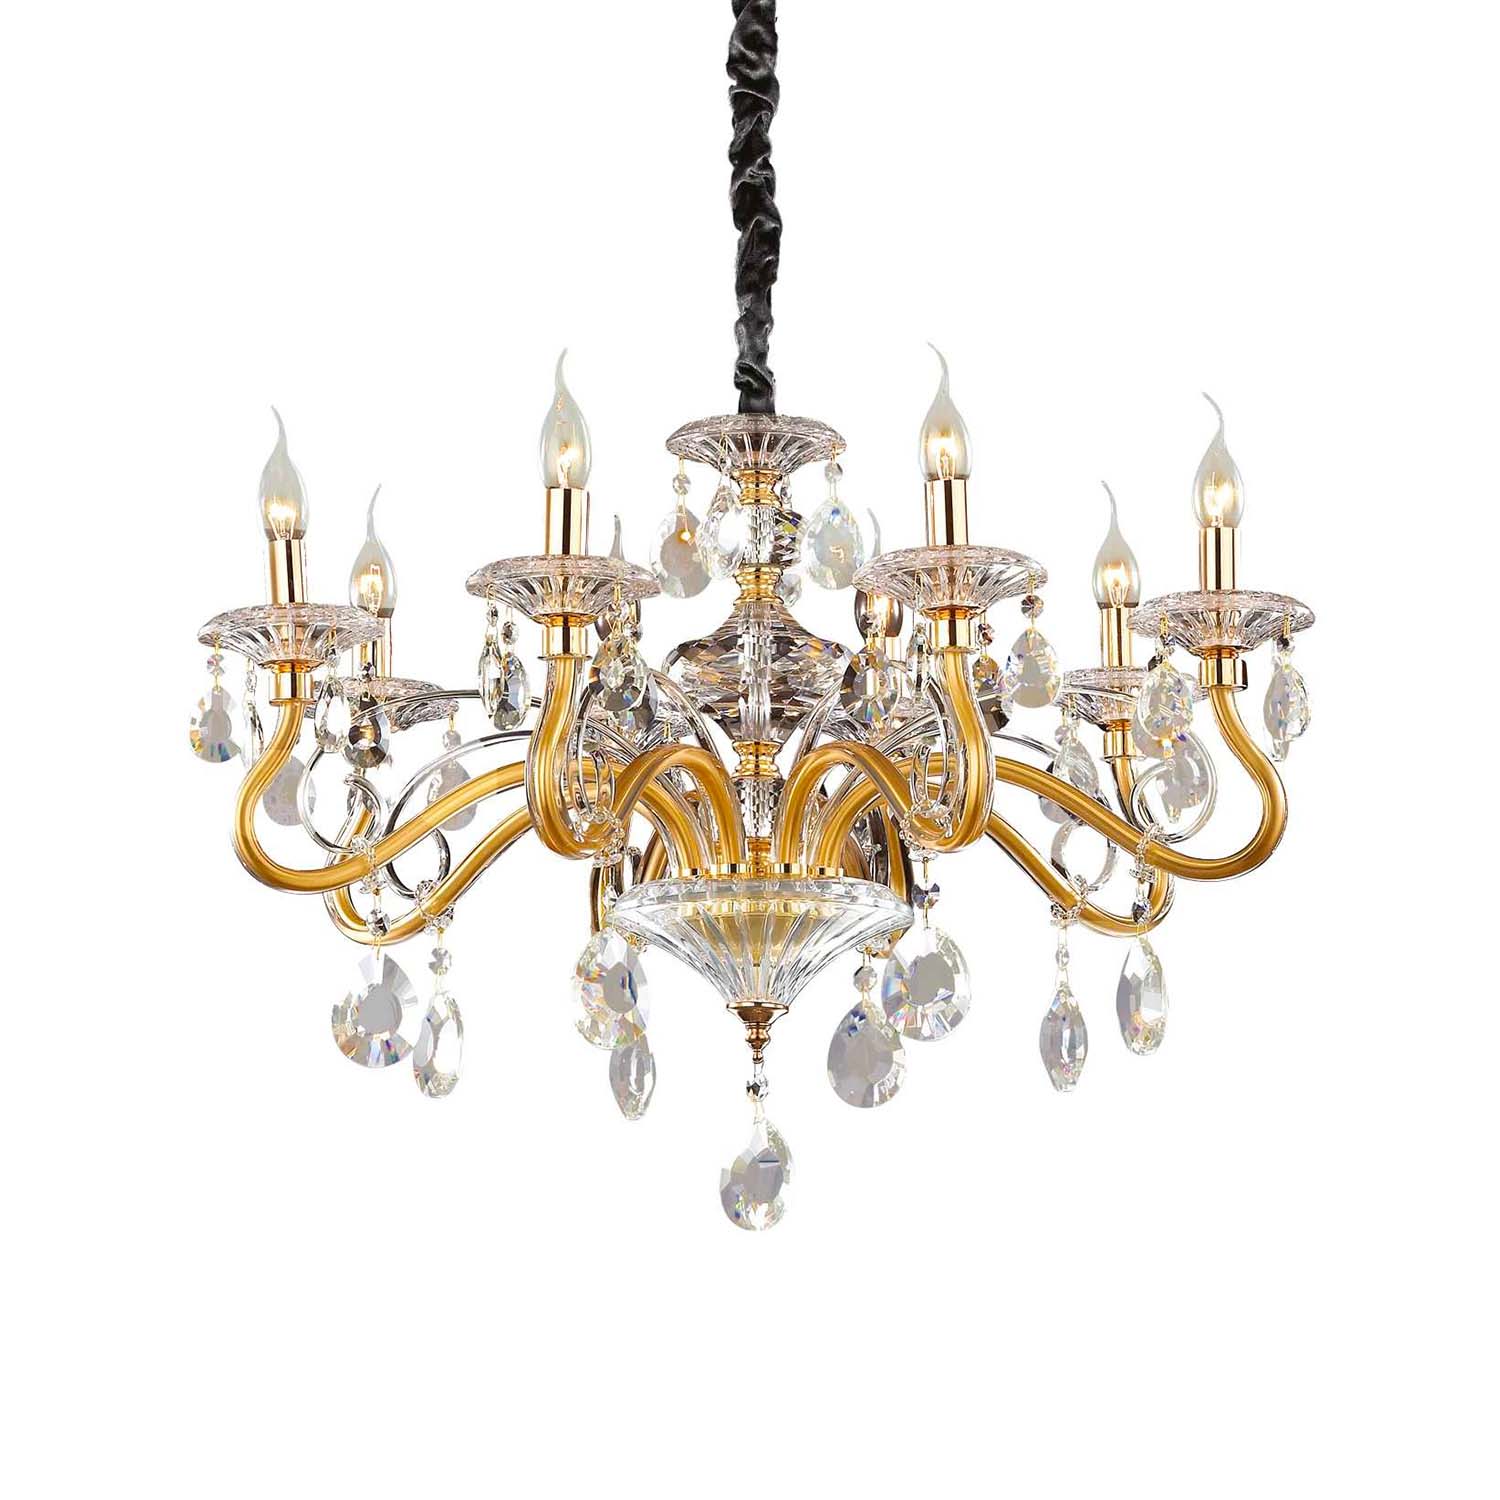 NEGRESCO - Golden glass and crystal chandelier